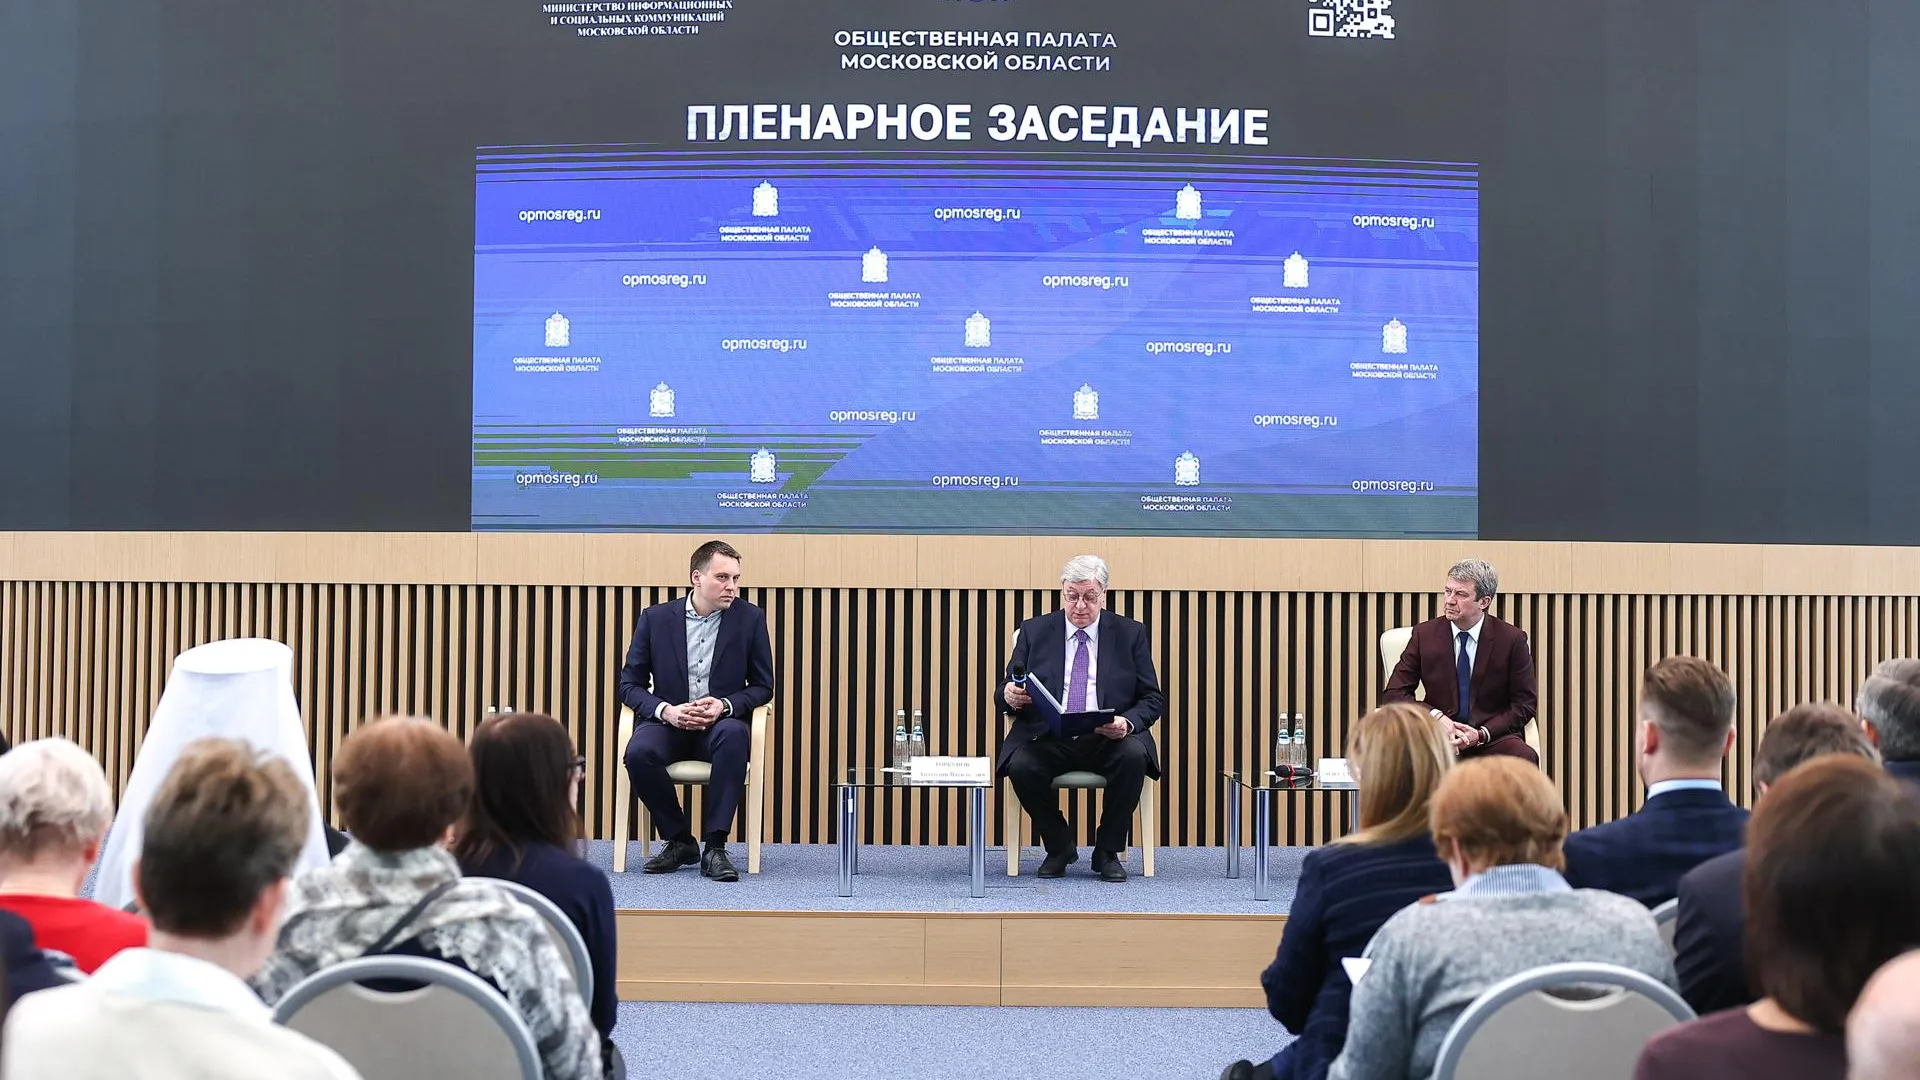 Работу наблюдателей на выборах президента РФ обсудили в Подмосковье